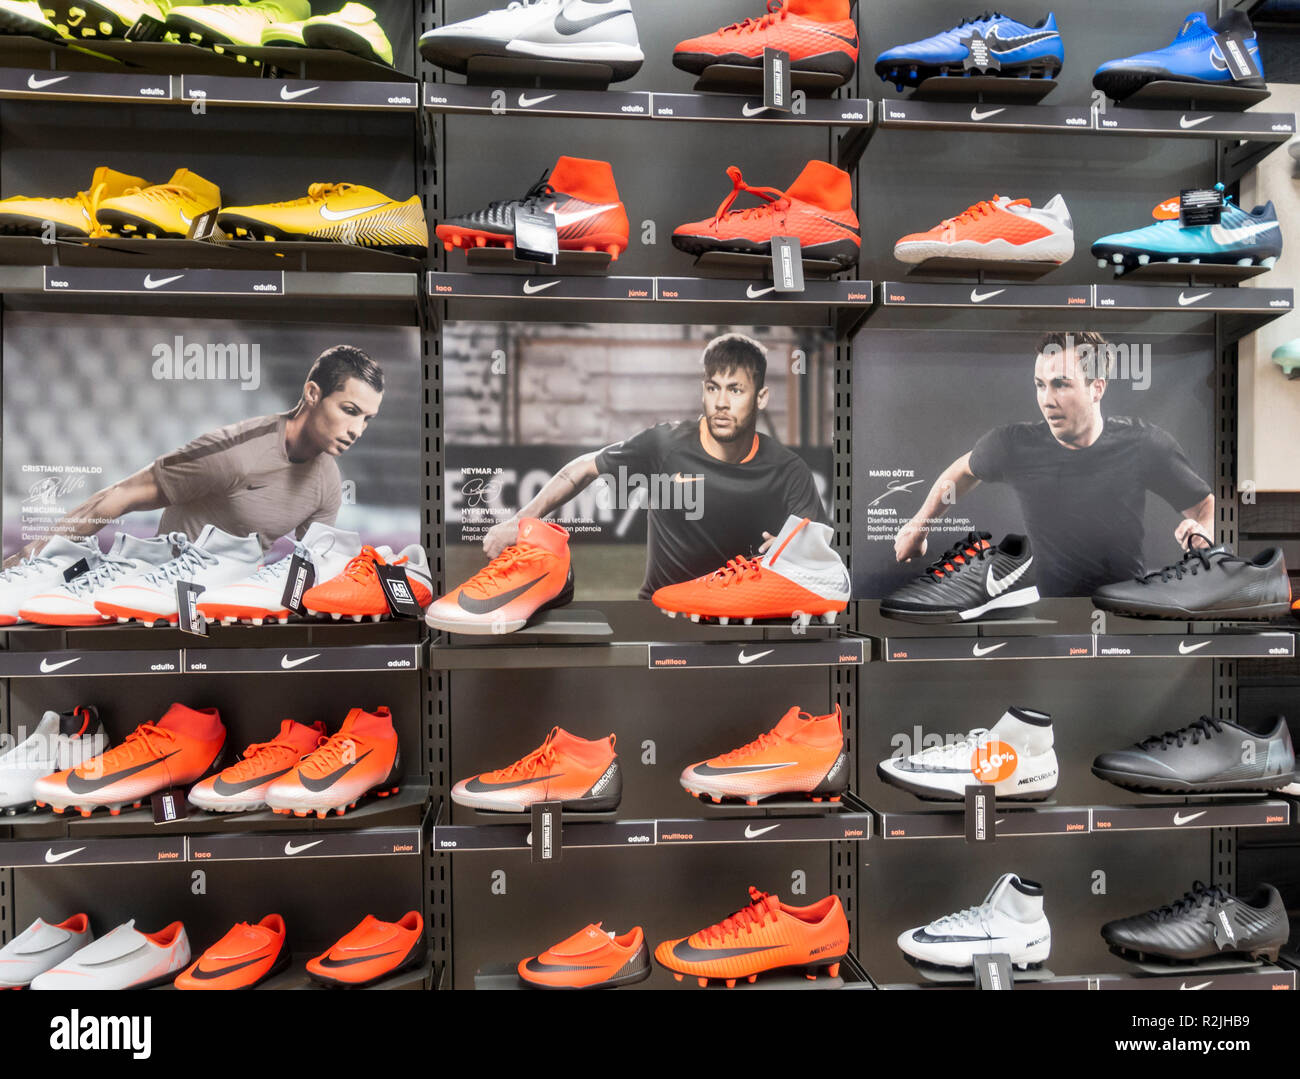 Speichern Anzeige von Nike Fußballschuhe Stockfotografie - Alamy